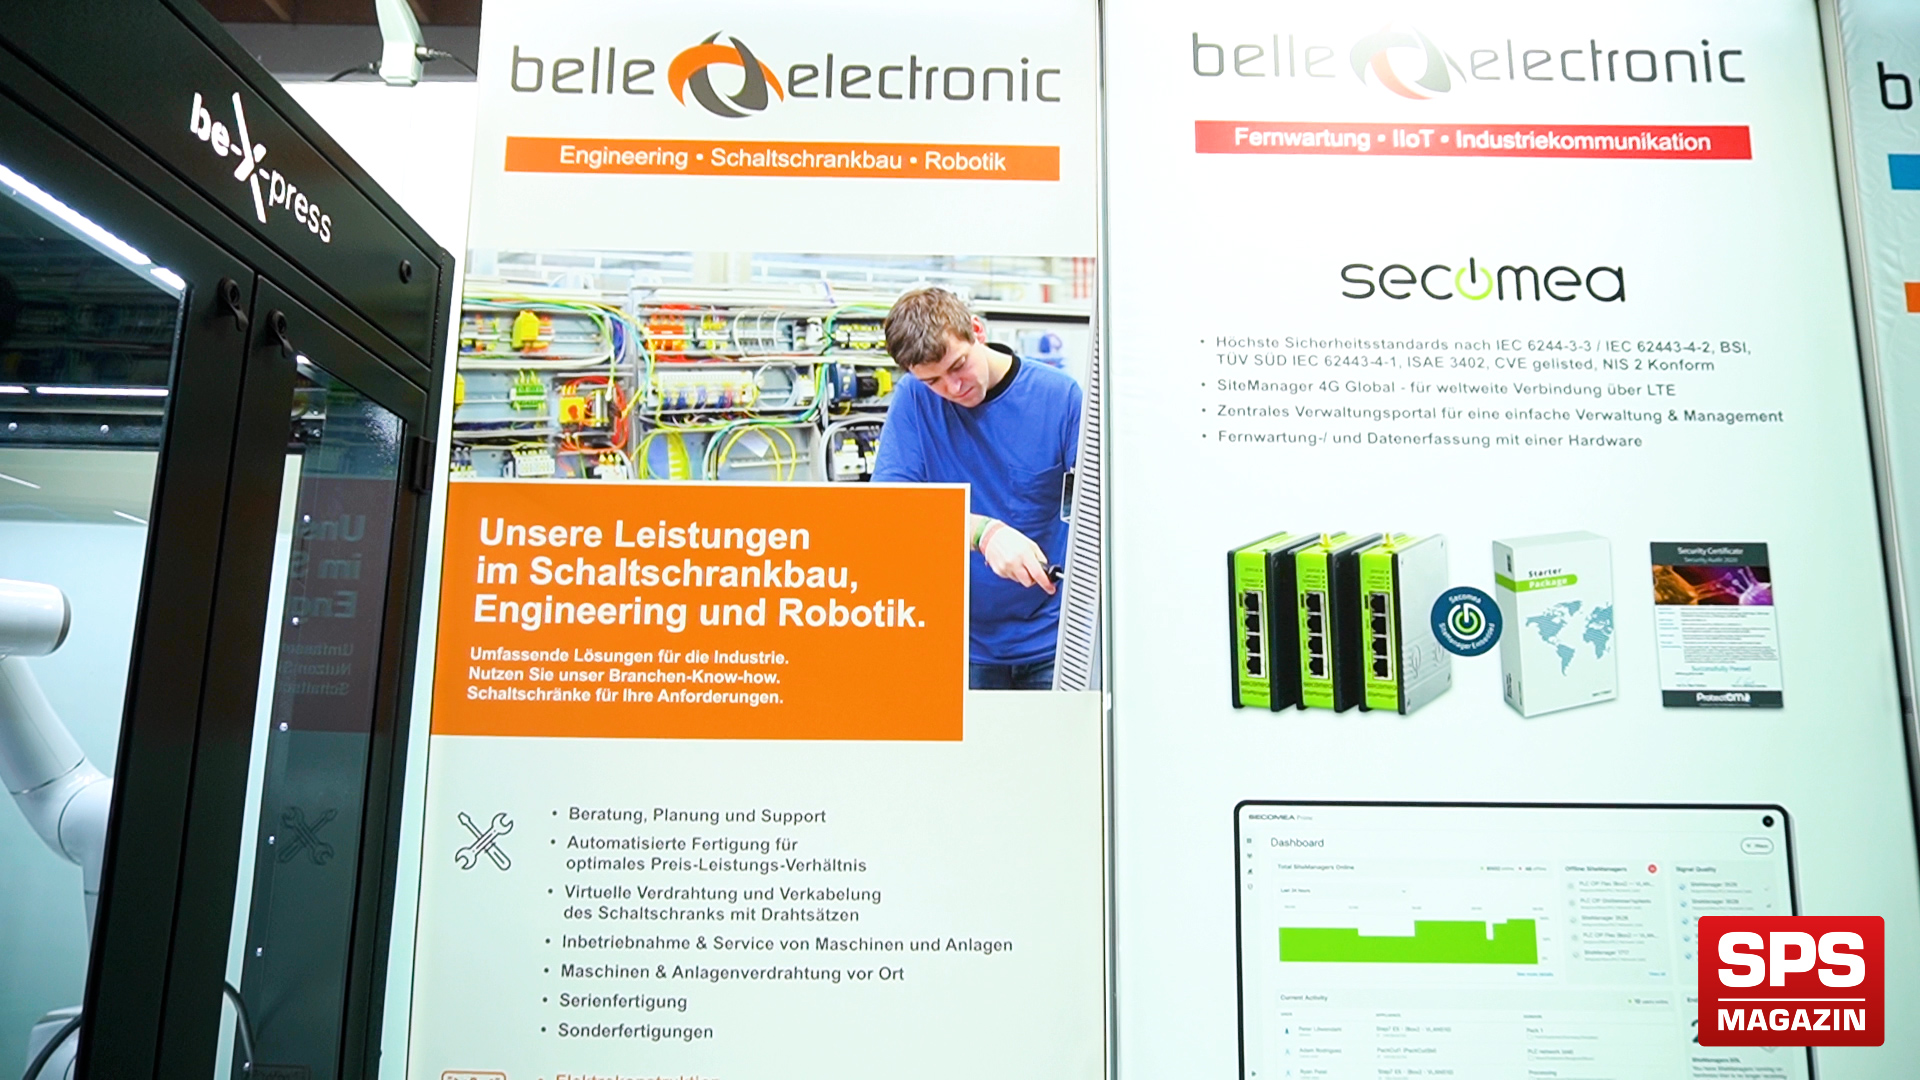 SPS-MAGAZIN auf der AAA Friedrichshafen zu Besuch bei Belle Electronic